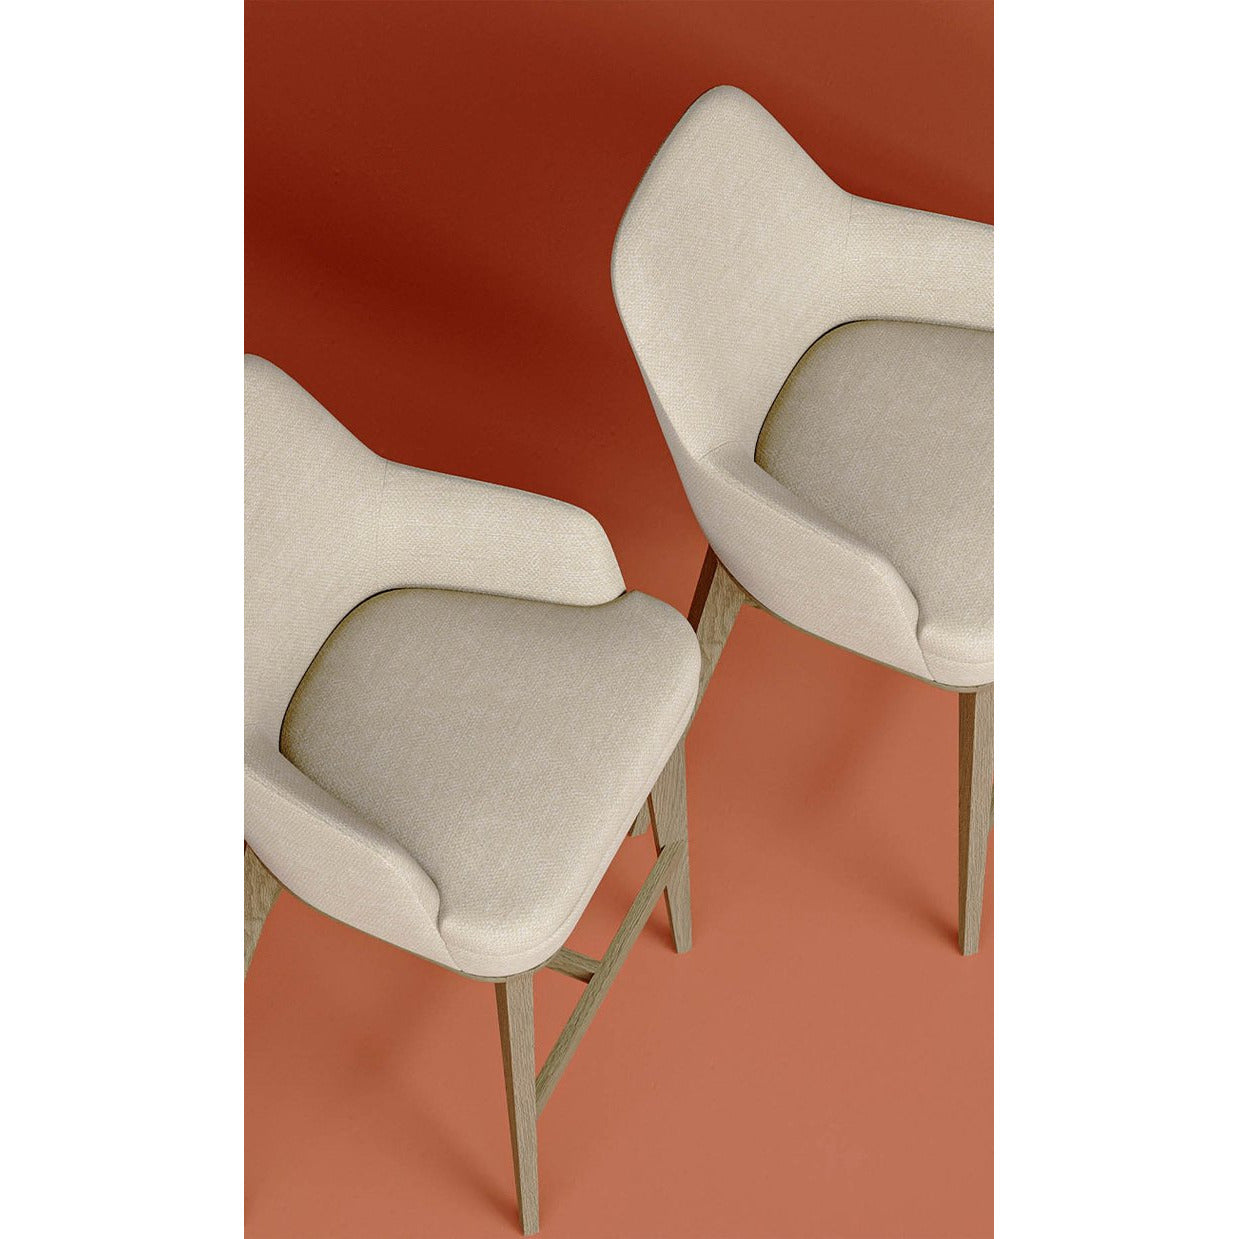 S4 Semi-bar stool | Modern Furniture + Decor